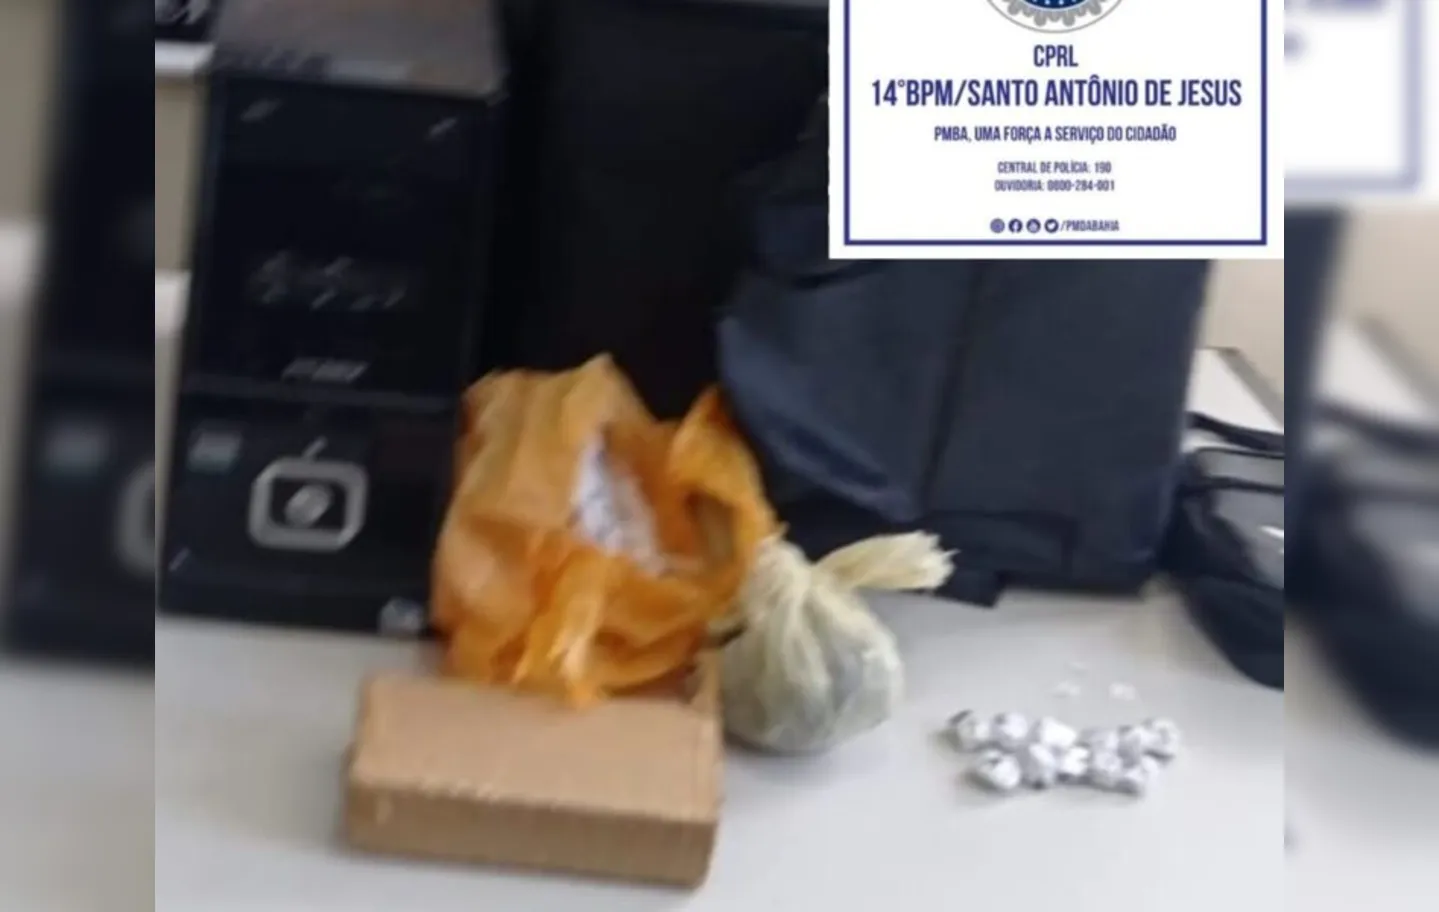 Agentes apreenderam 1,3 kg de maconha e embalagens para comercialização da droga